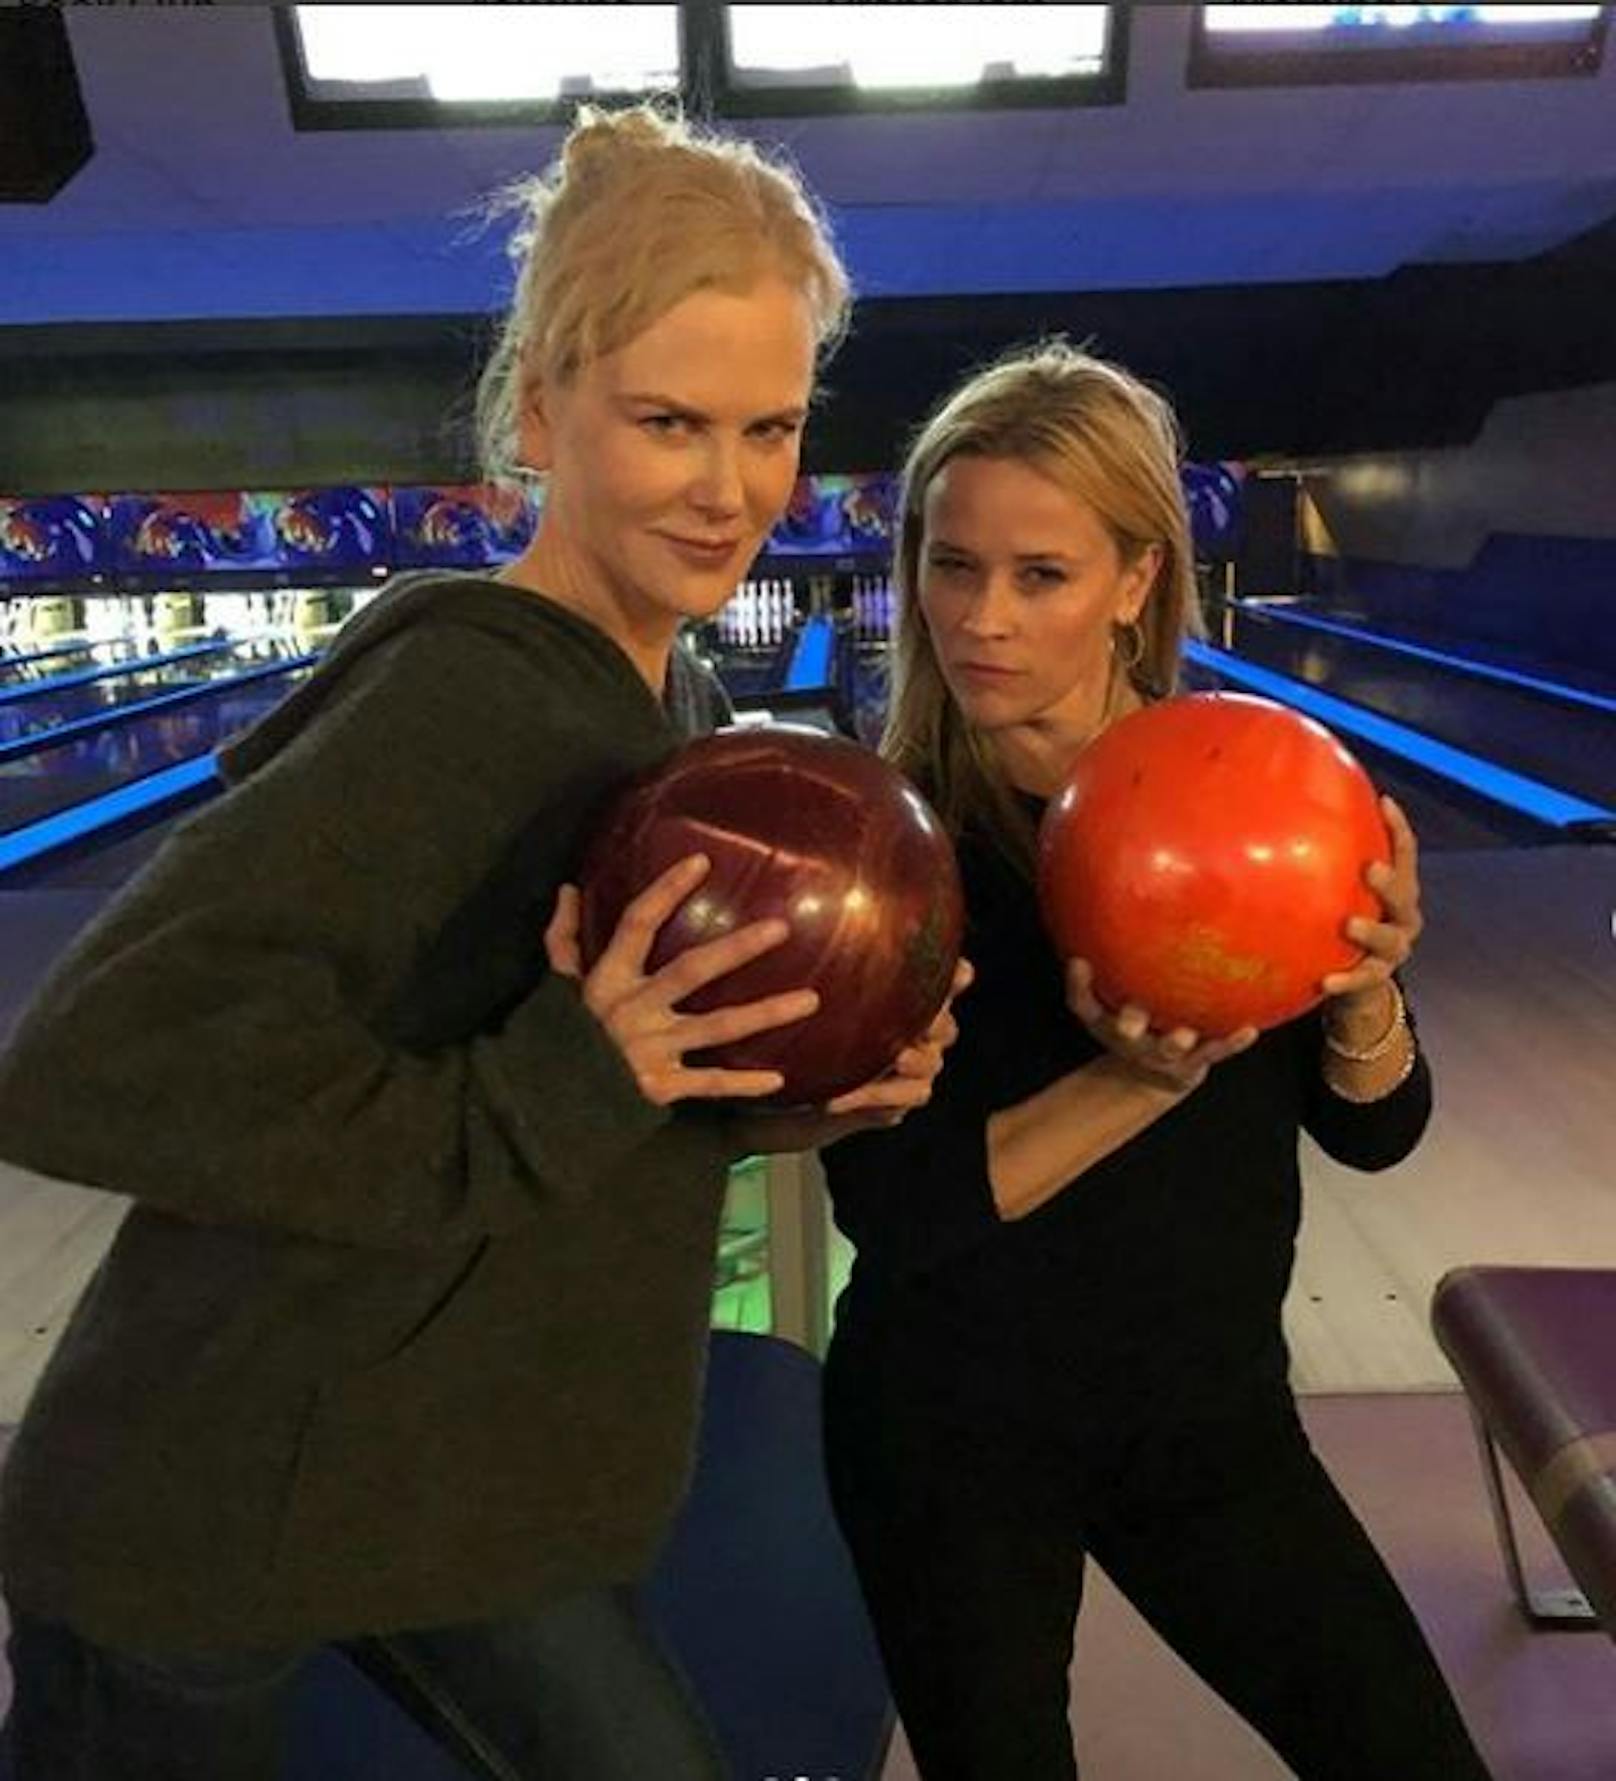 21.6.2020: Schauspielerin <strong>Reese Witherspoon</strong> gratuliert ihrer besten Freundin und Kollegin <strong>Nicole Kidman</strong>&nbsp;(li.) zum Geburtstag. "Ich hab so ein Glück, dich in meinem Leben zu haben", schreibt sie ihrem "Big Little Lies"-Co-Star unter ein gemeinsames Bowling-Foto.